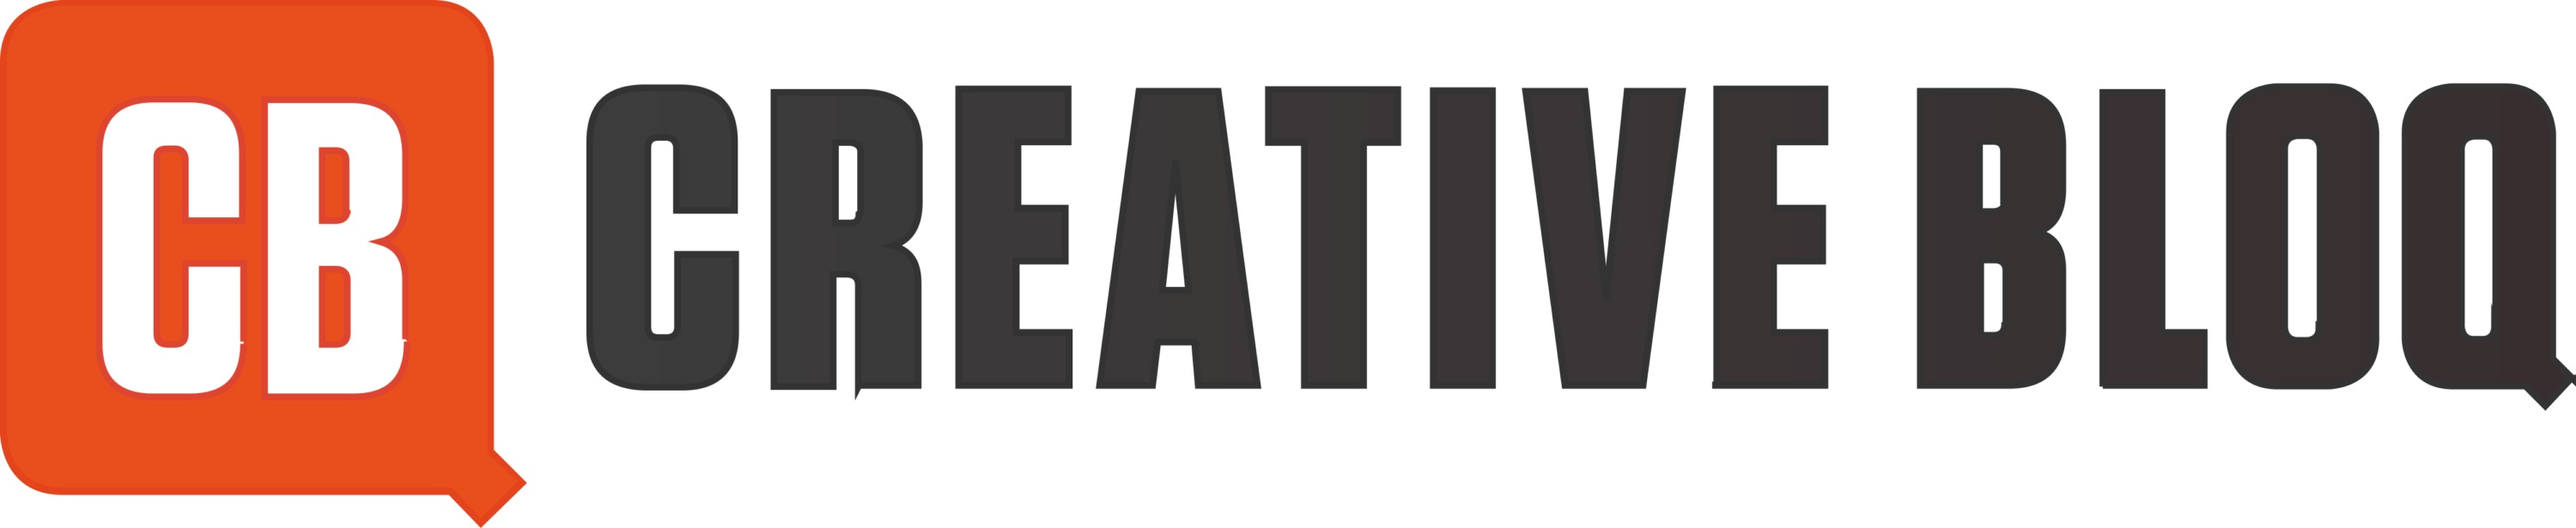 Creative Bloq Logo